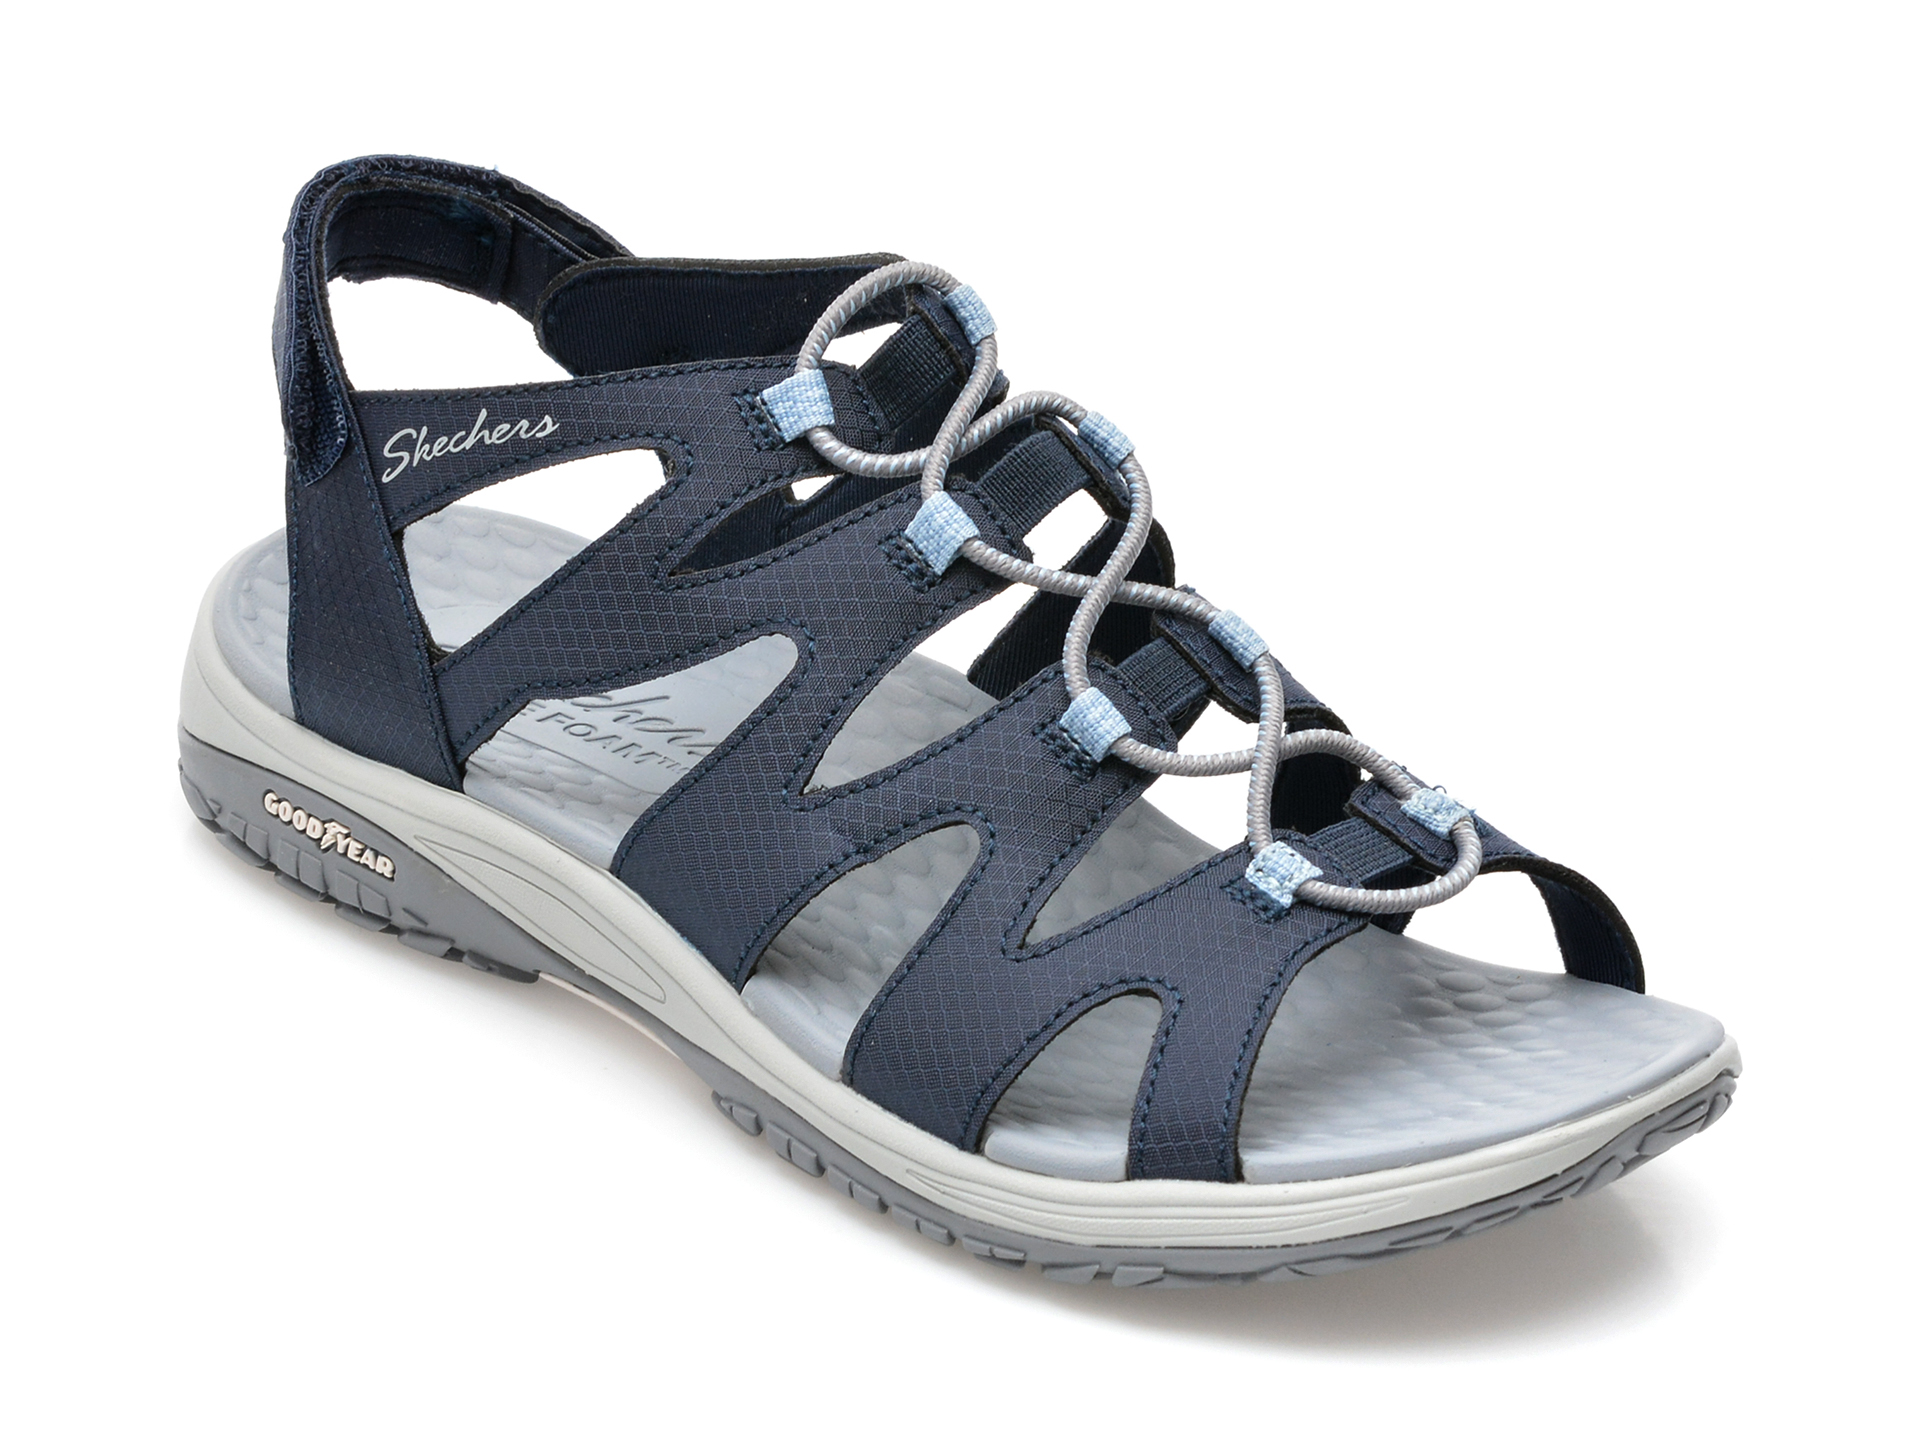 Sandale SKECHERS bleumarin, LOMELL, din material textil otter.ro otter.ro